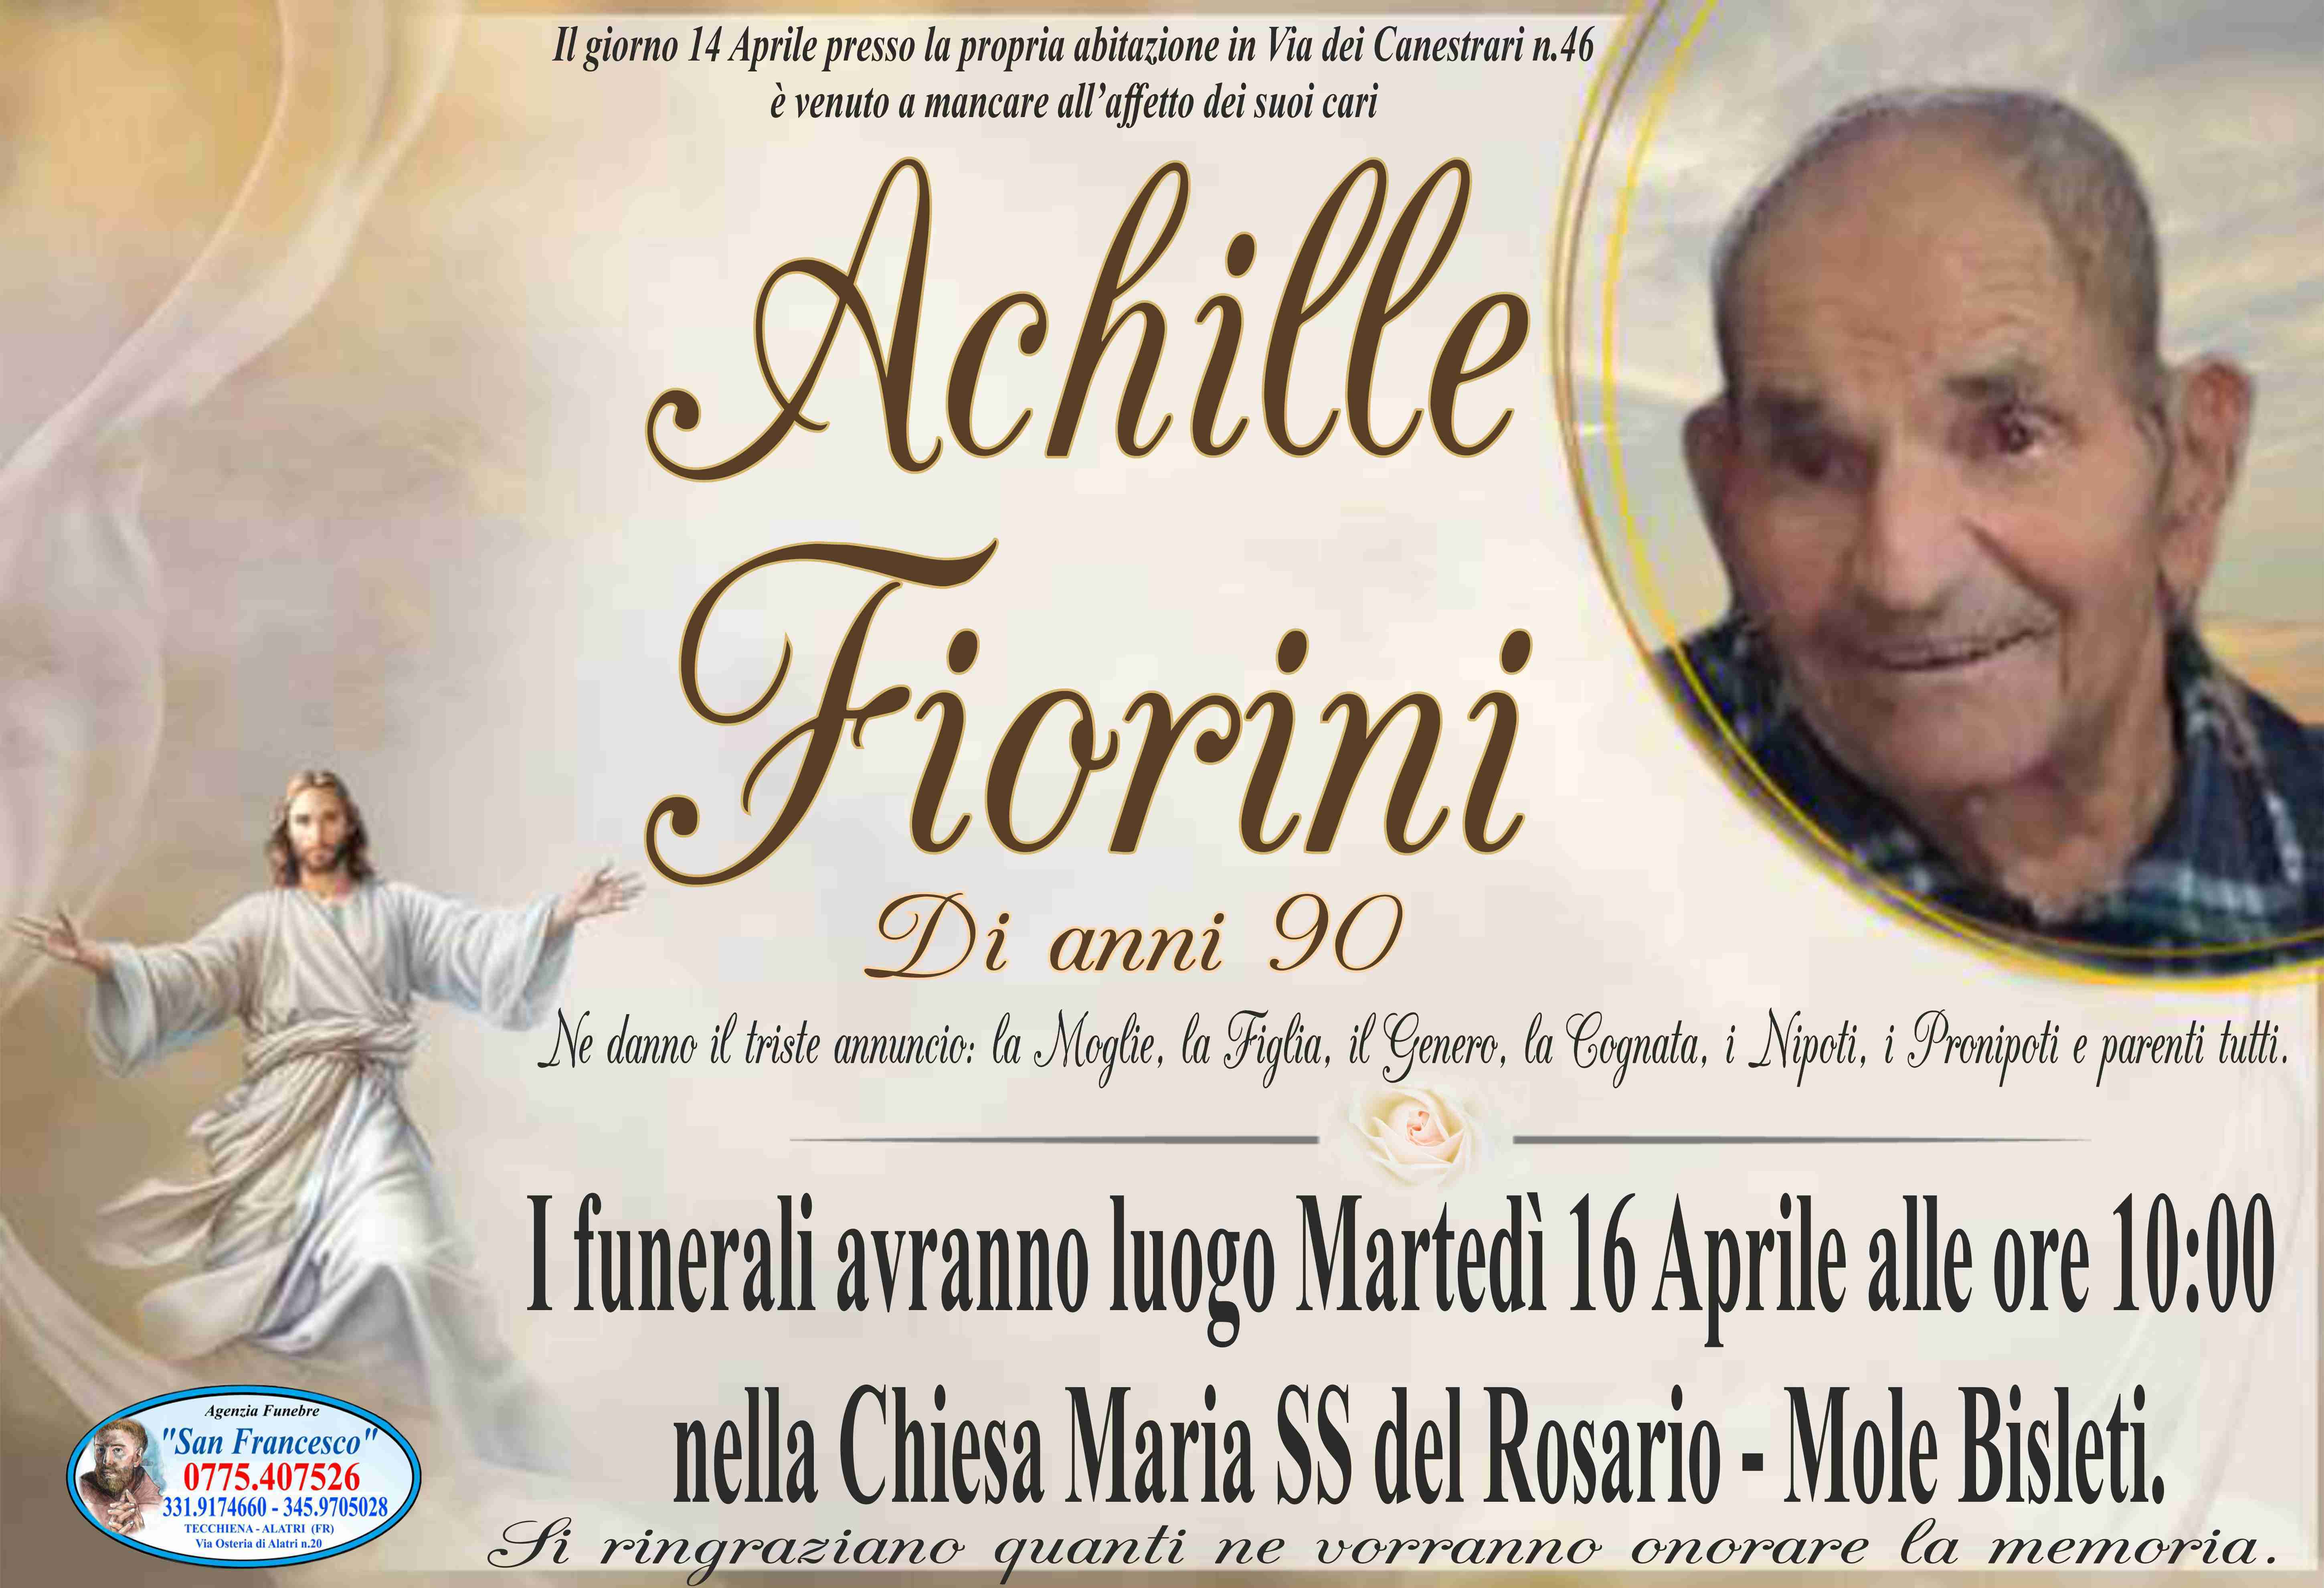 Achille Fiorini